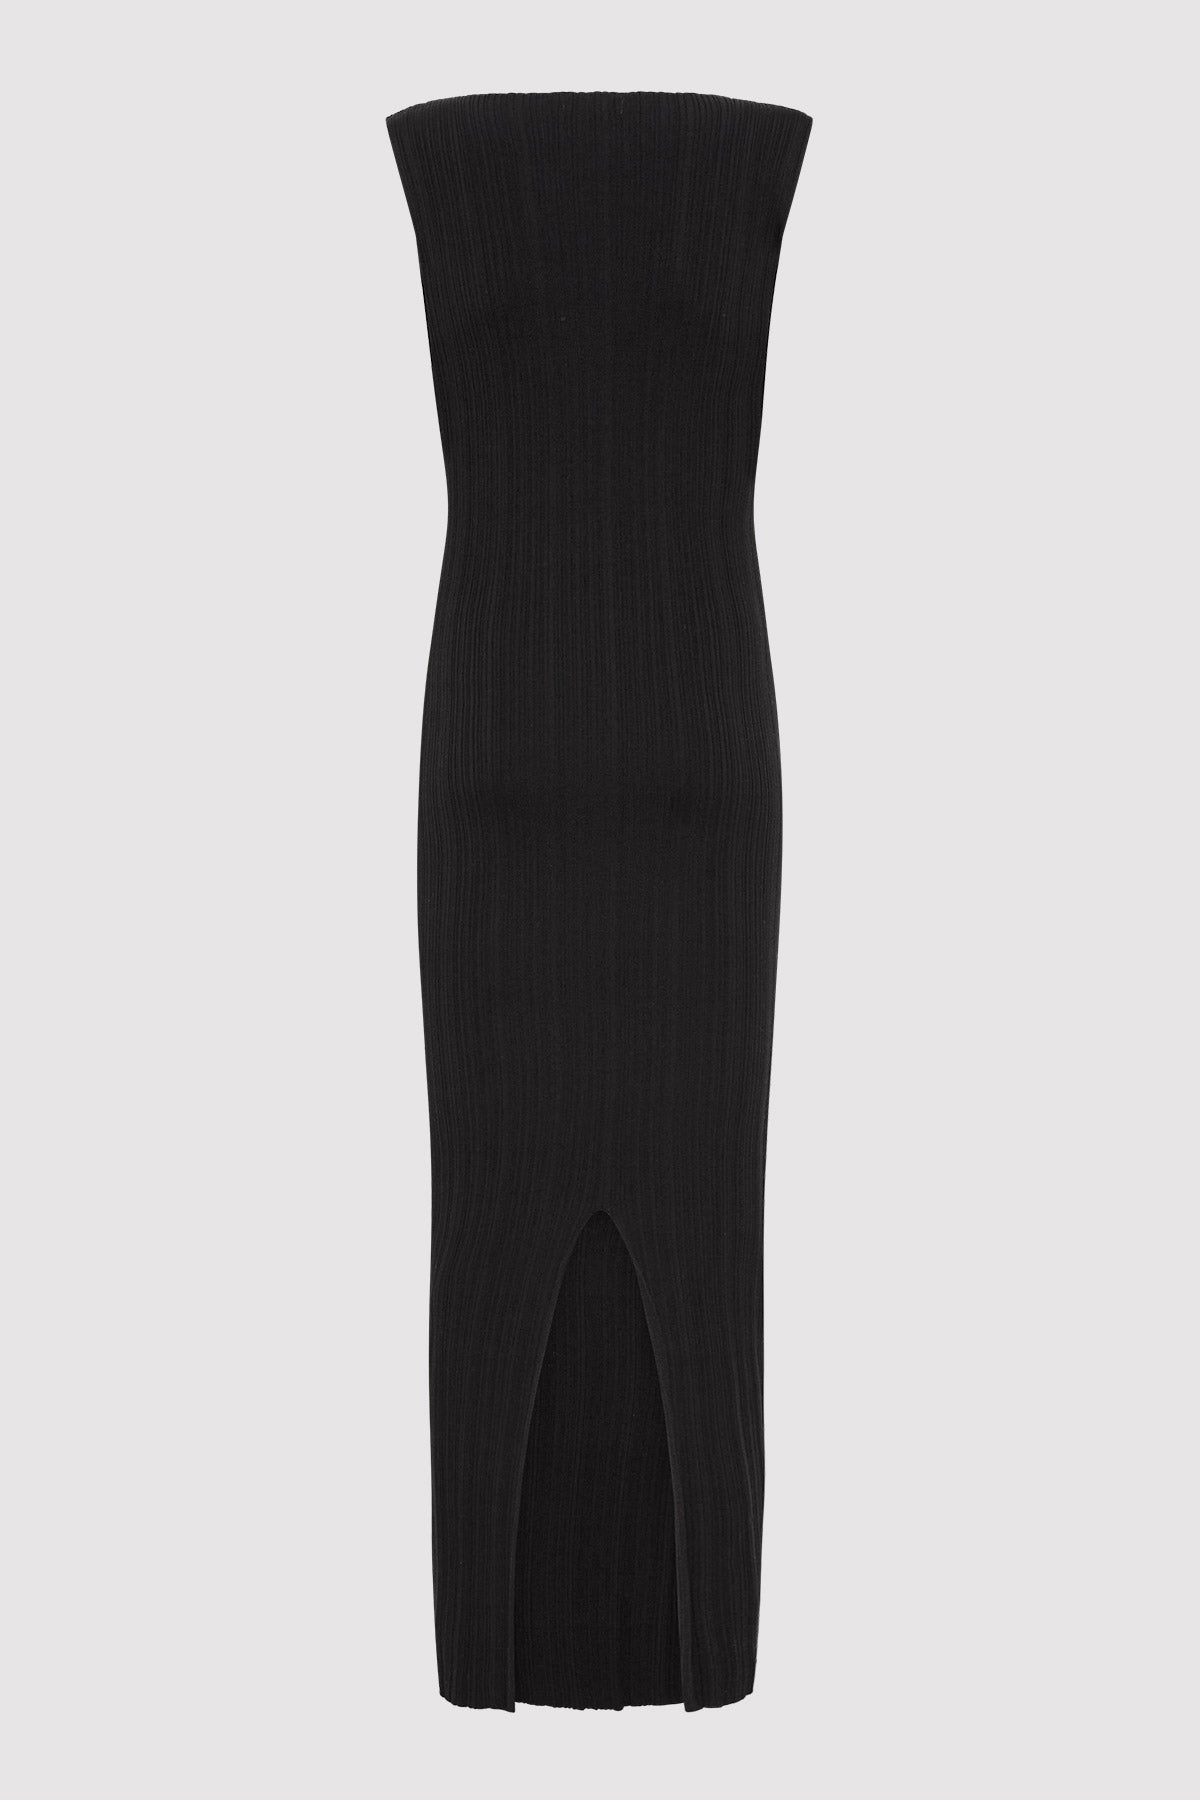 Vas Pleat Knit Dress - Black